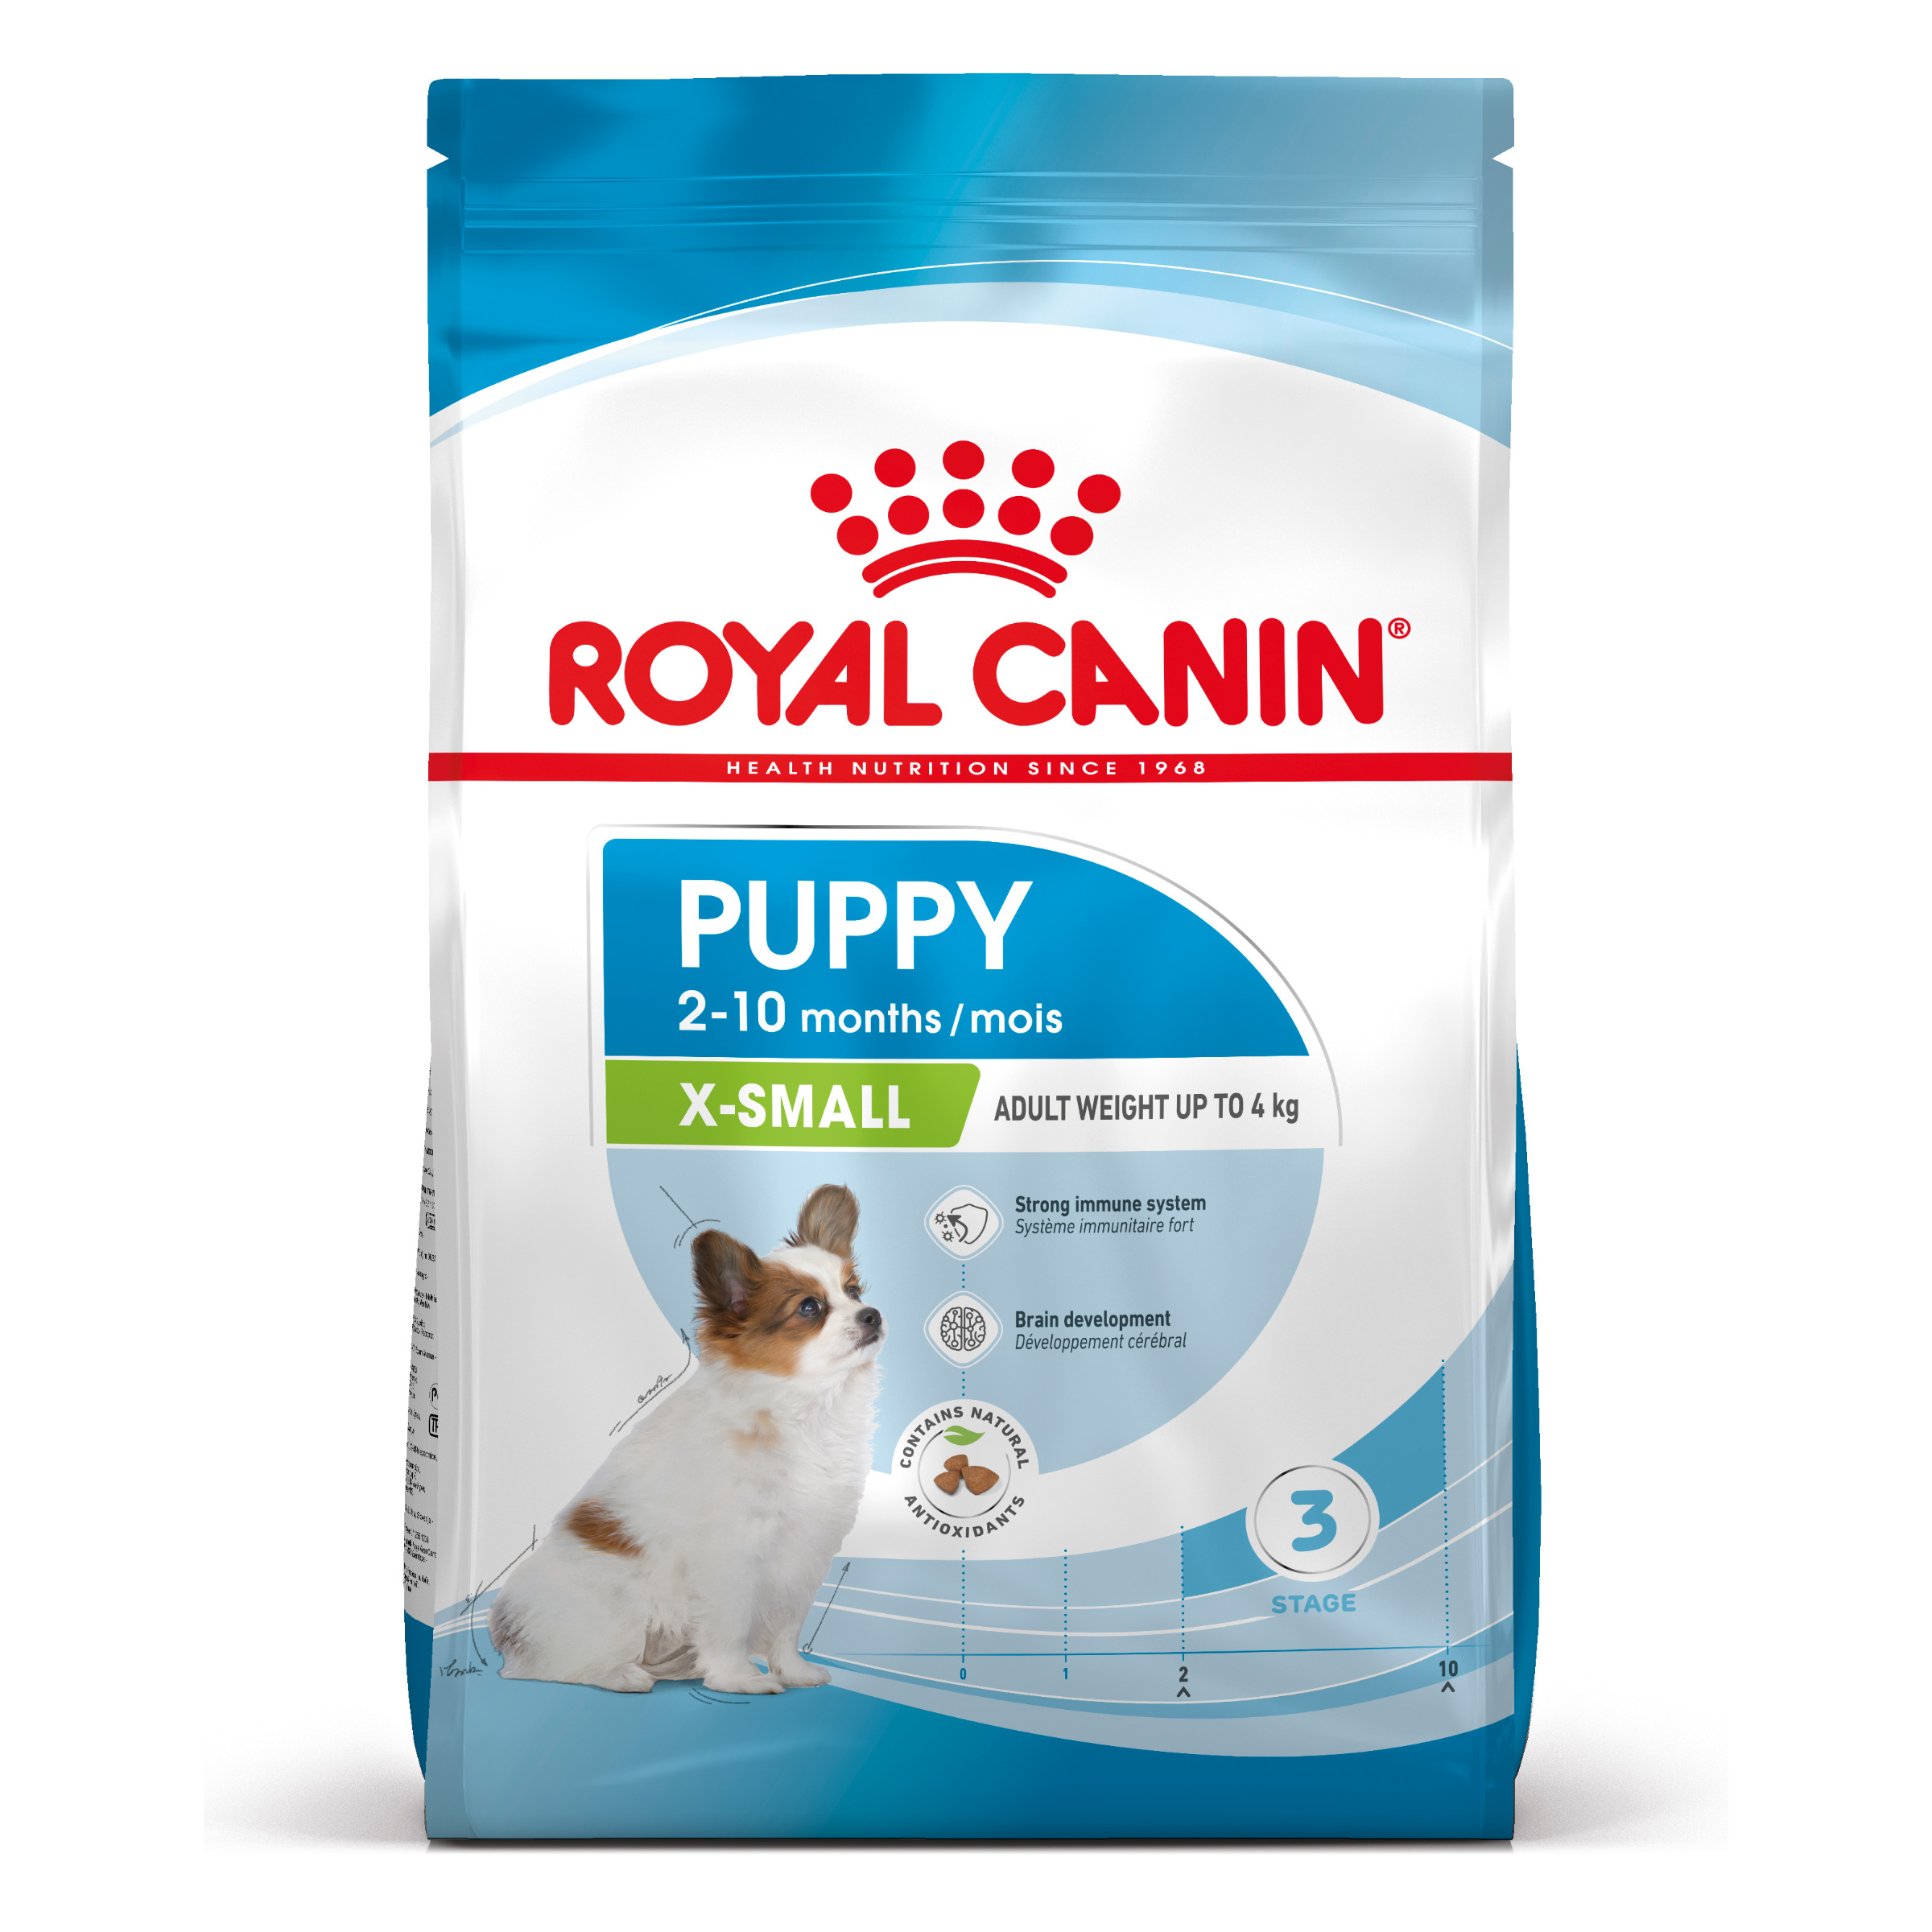 Royal Canin X-Small Puppy - Hondenvoer voor pups van zeer kleine rassen (gewicht tot 4kg) tot 10 maanden - 1,5kg